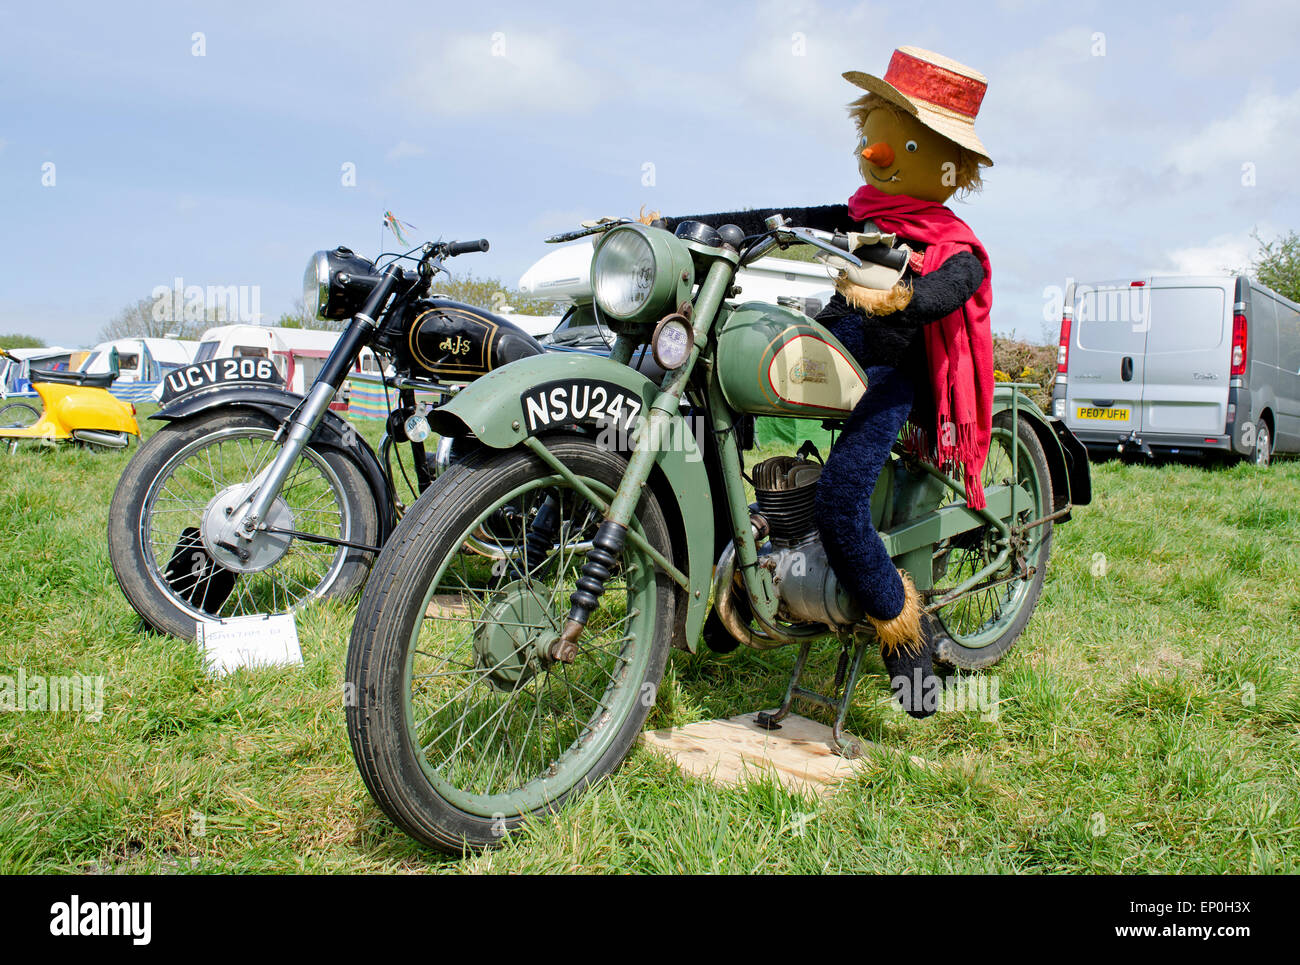 Un vintage BSA motocicletta con uno spaventapasseri seduta su di esso Foto Stock